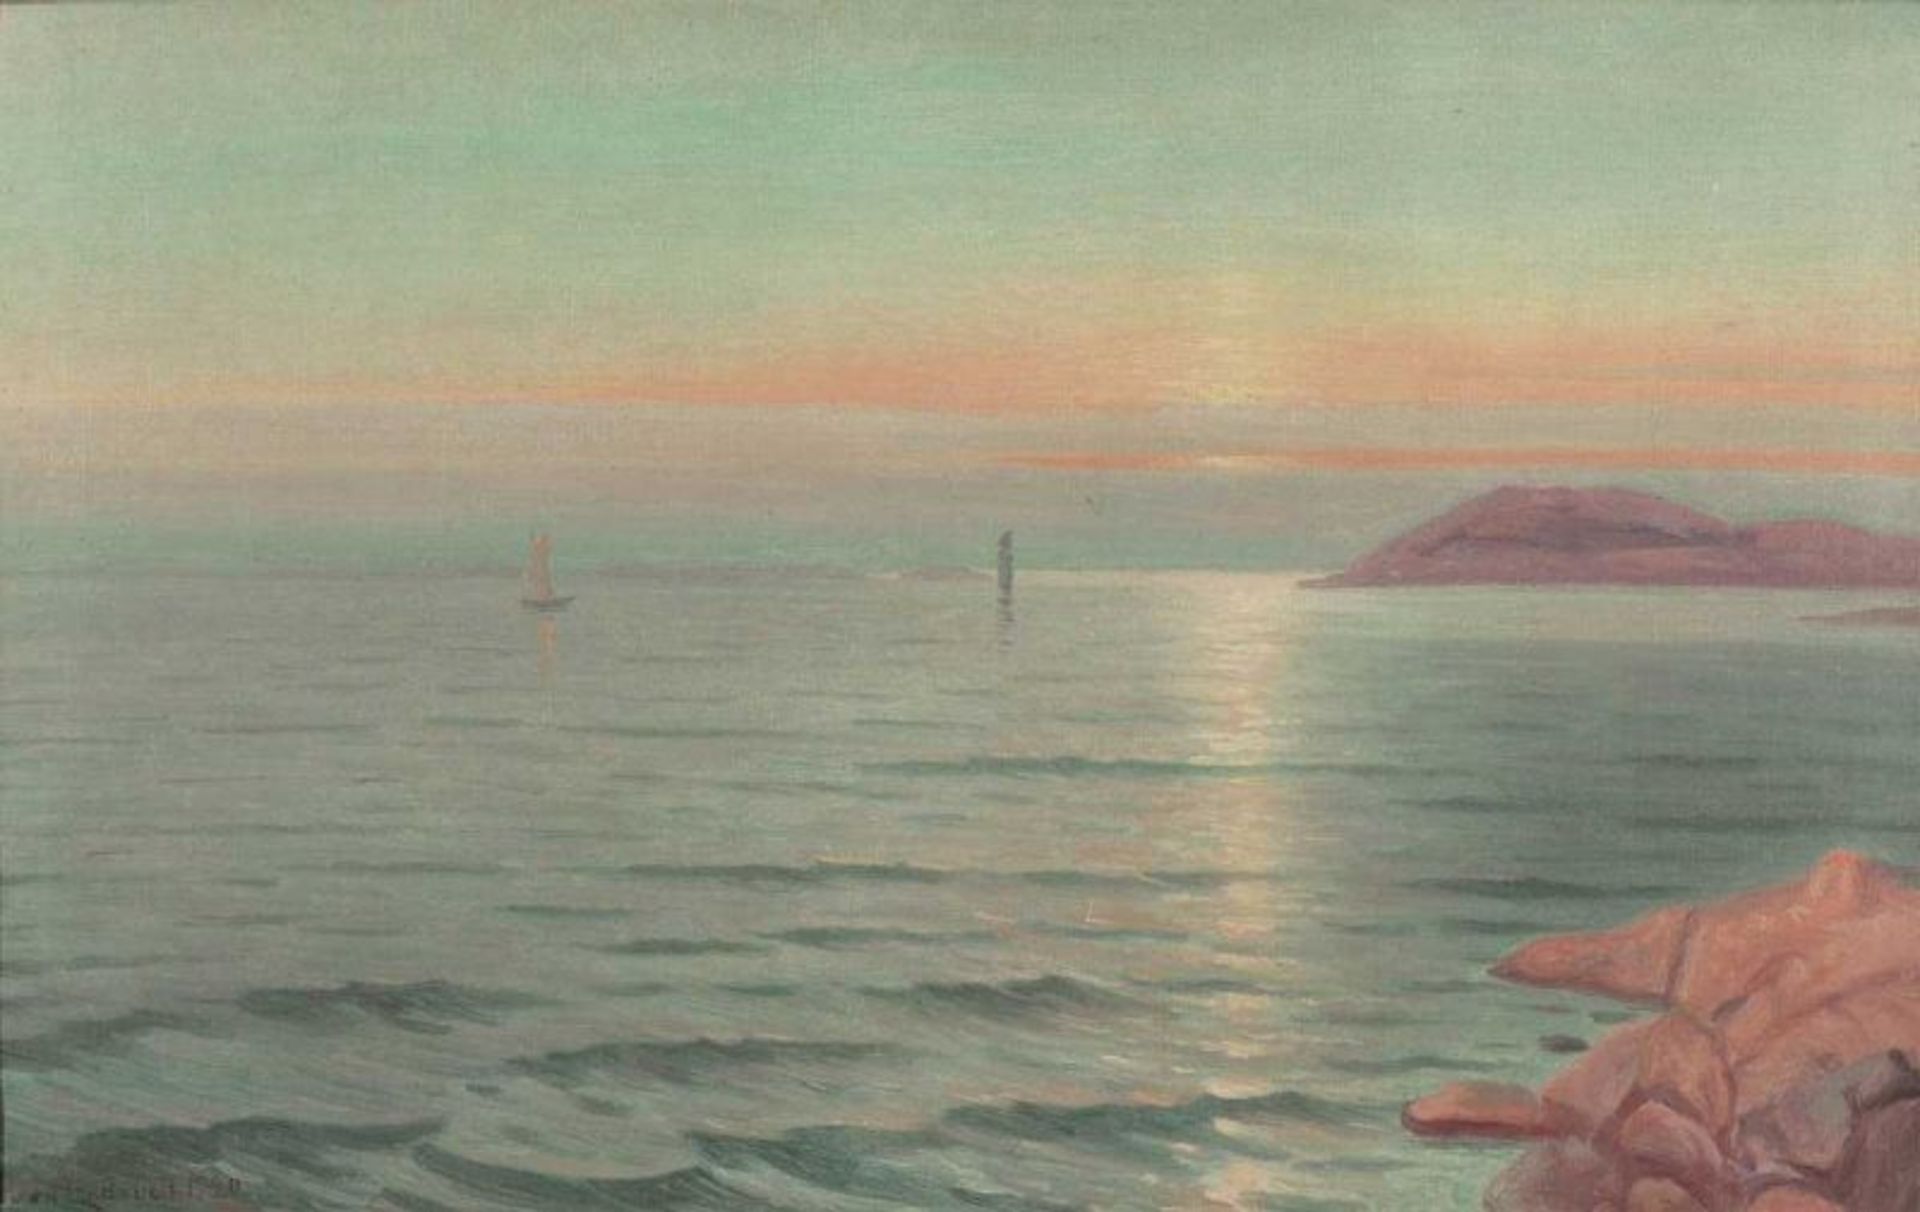 Sven Linderoth 1859 - 1934 - Küste mit Seglern bei Sonnenuntergang - Öl/Lwd. 61 x 95 cm. Sign. und